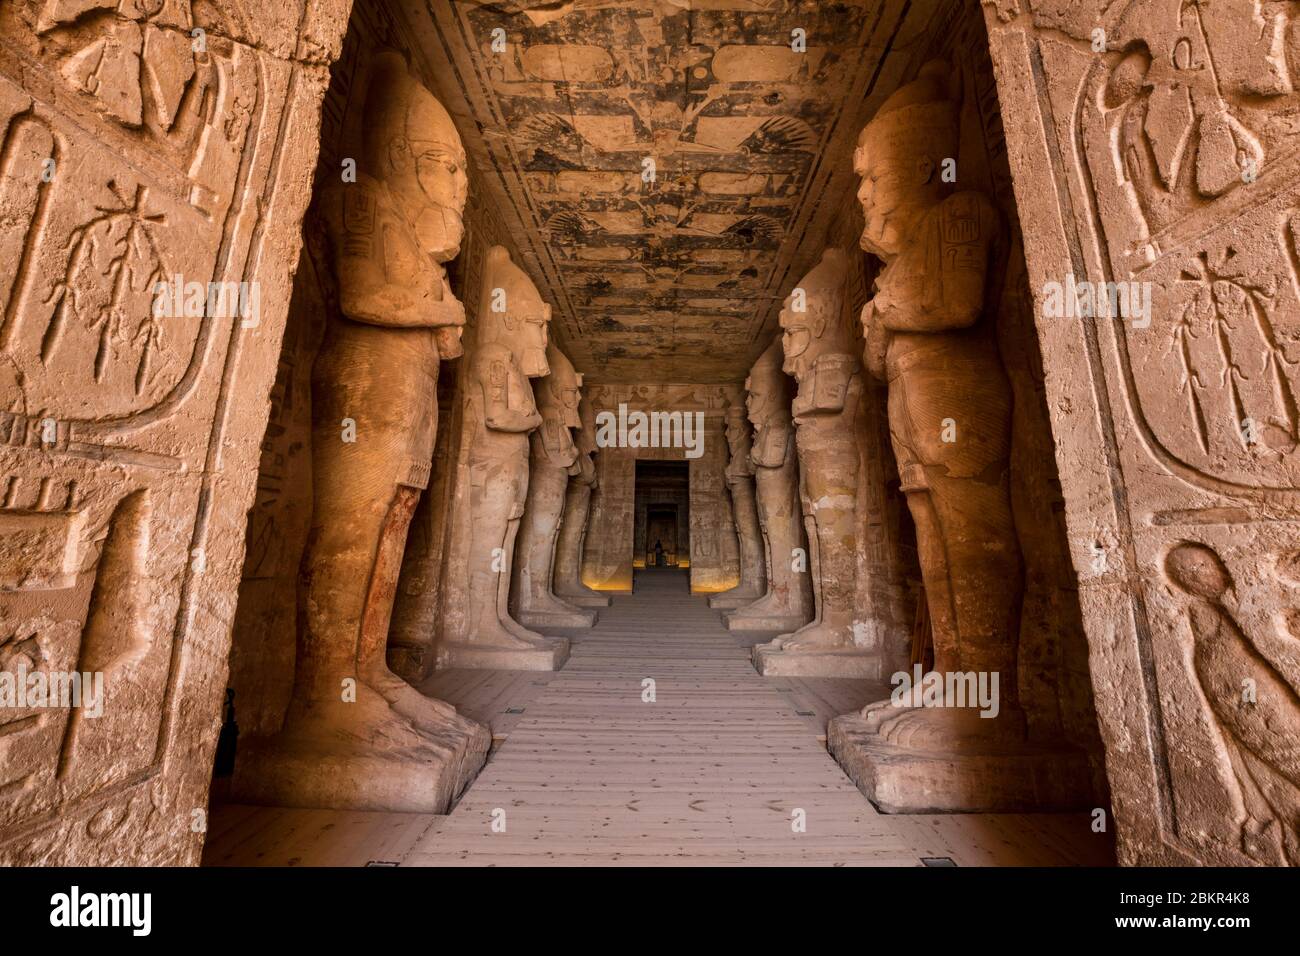 Égypte, haute Égypte, Nubie, Abu Simbel, site du patrimoine mondial de l'UNESCO, temple de Ramses II, piliers d'Osiriens portant l'image de Ramses II soutenant les pronaos (salle hypostyle) Banque D'Images